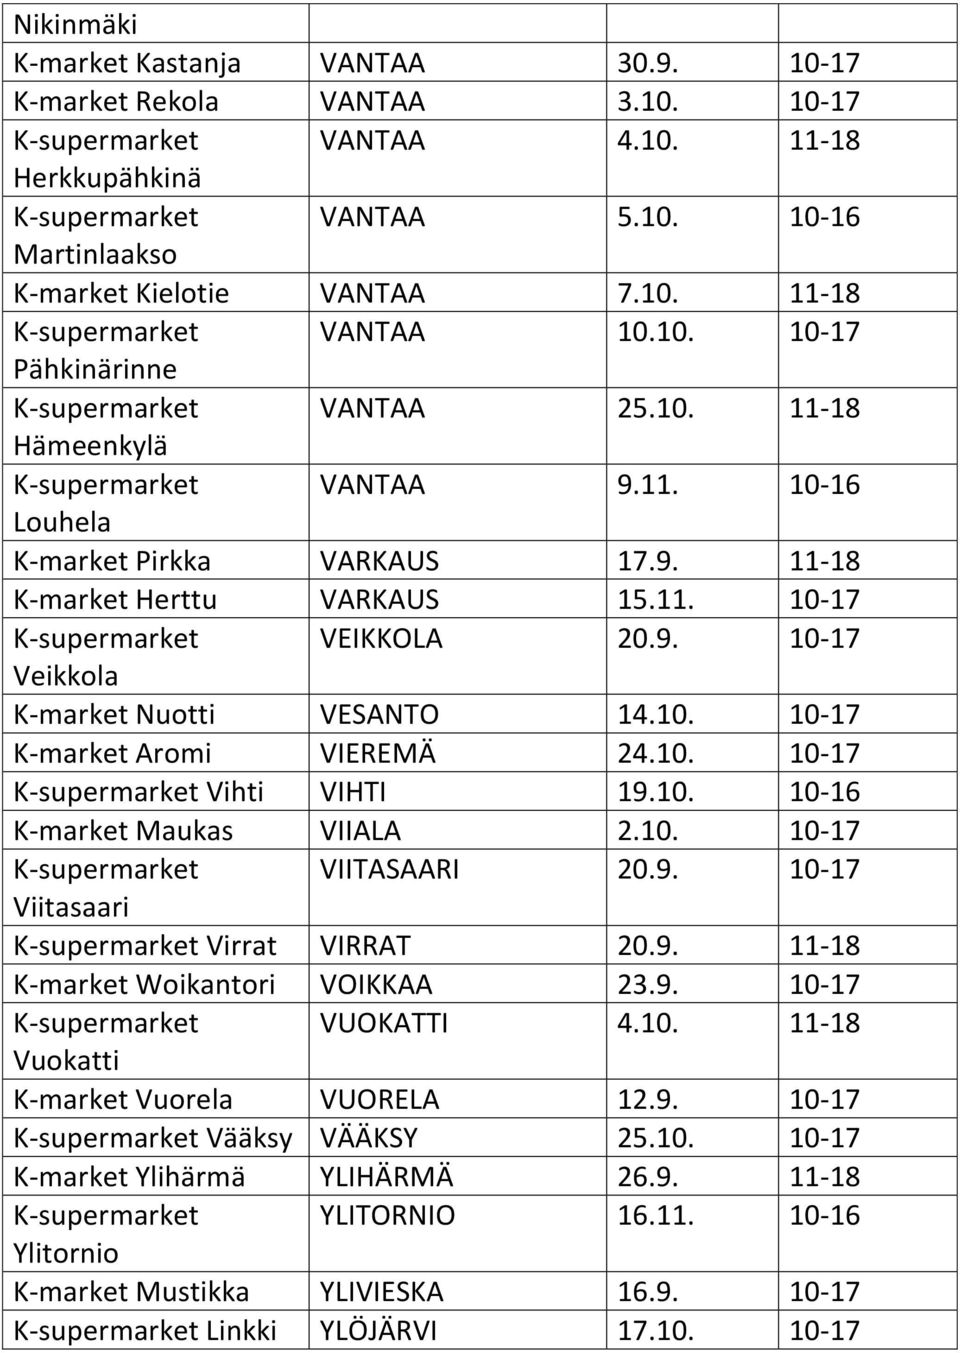 11. 10-17 K-supermarket VEIKKOLA 20.9. 10-17 Veikkola K-market Nuotti VESANTO 14.10. 10-17 K-market Aromi VIEREMÄ 24.10. 10-17 K-supermarket Vihti VIHTI 19.10. 10-16 K-market Maukas VIIALA 2.10. 10-17 K-supermarket VIITASAARI 20.